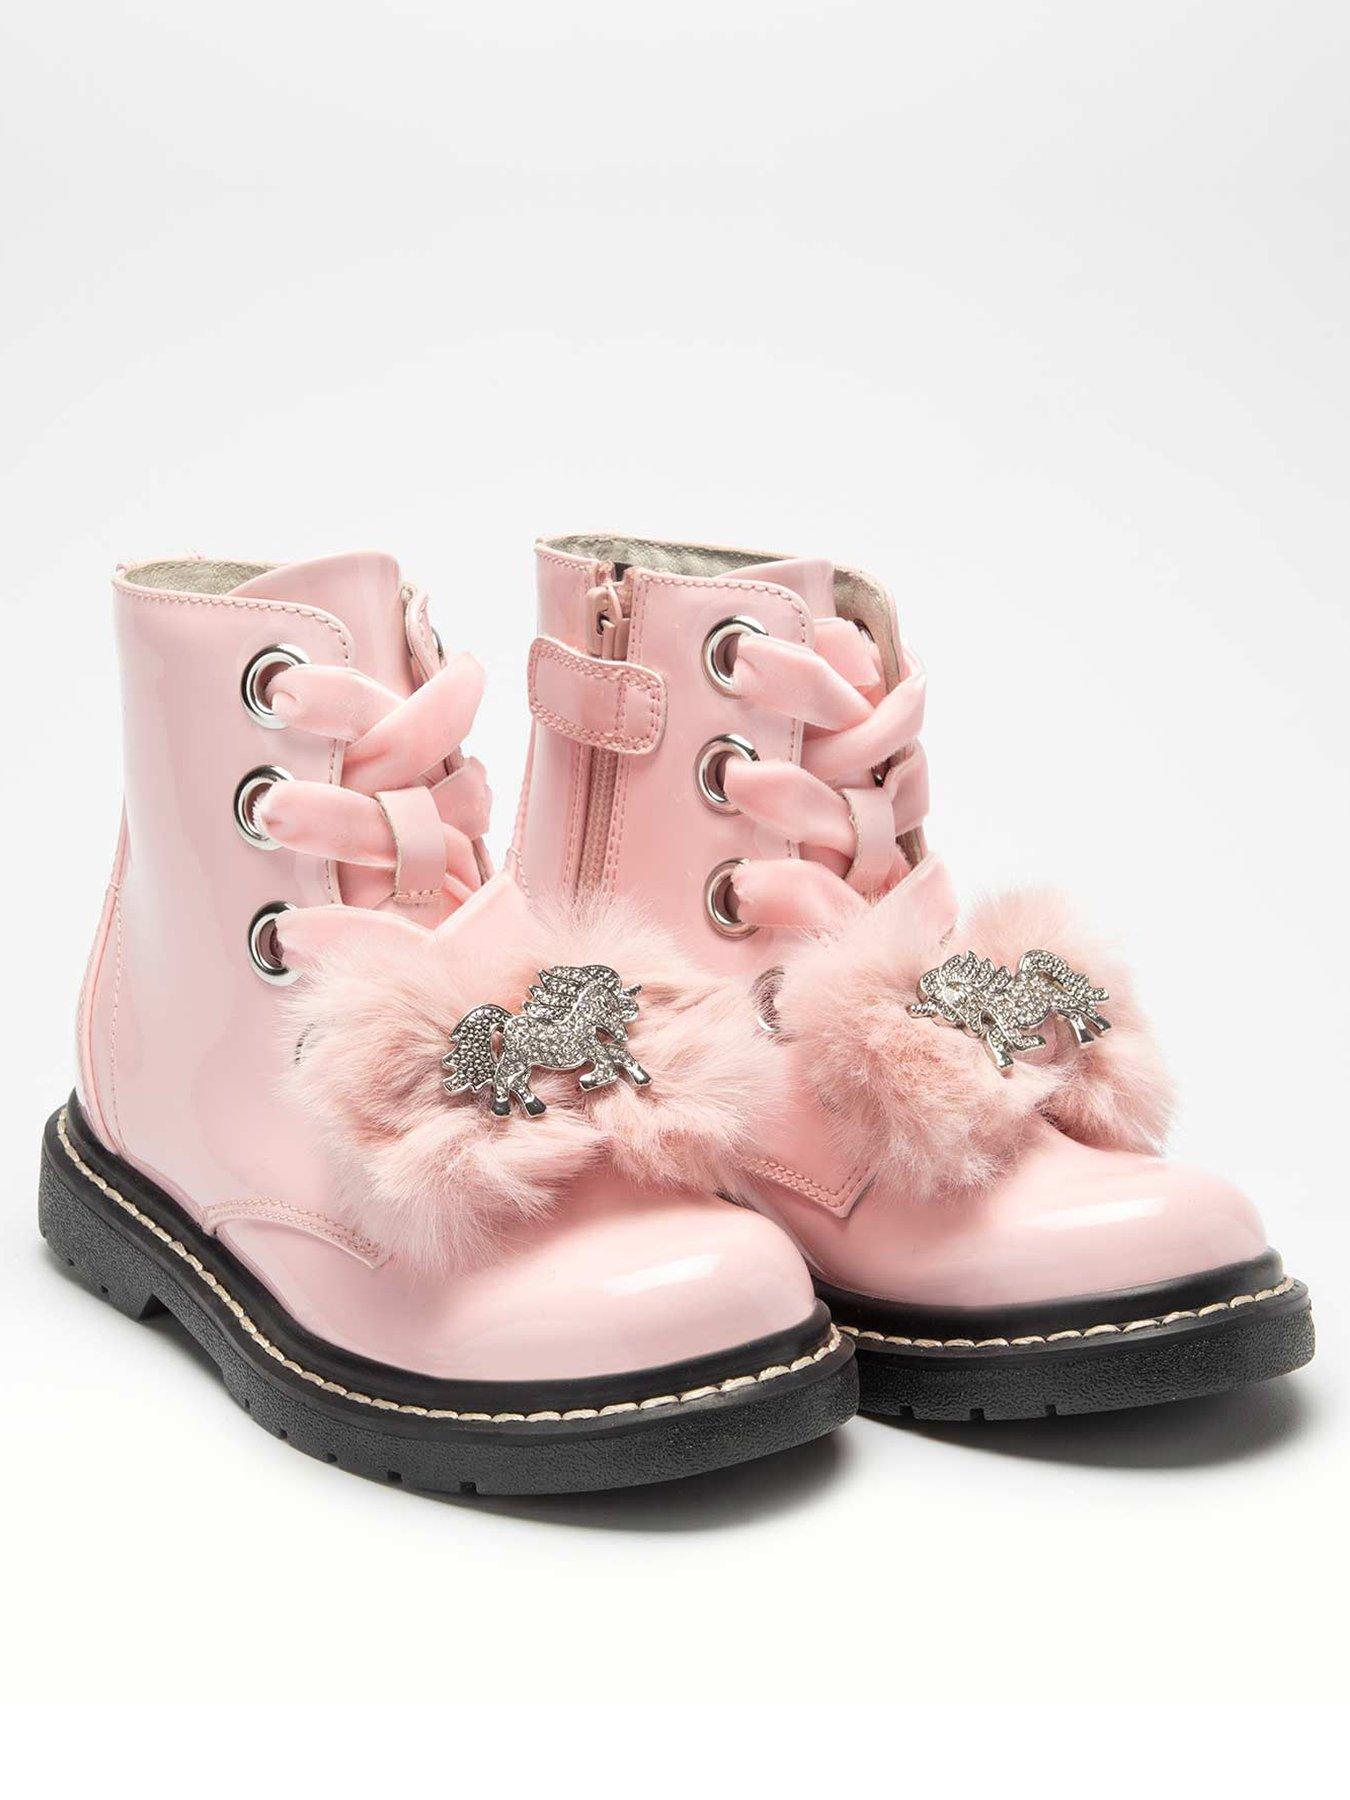 Girls Boots | Girls Shoes | Littlewoods.com